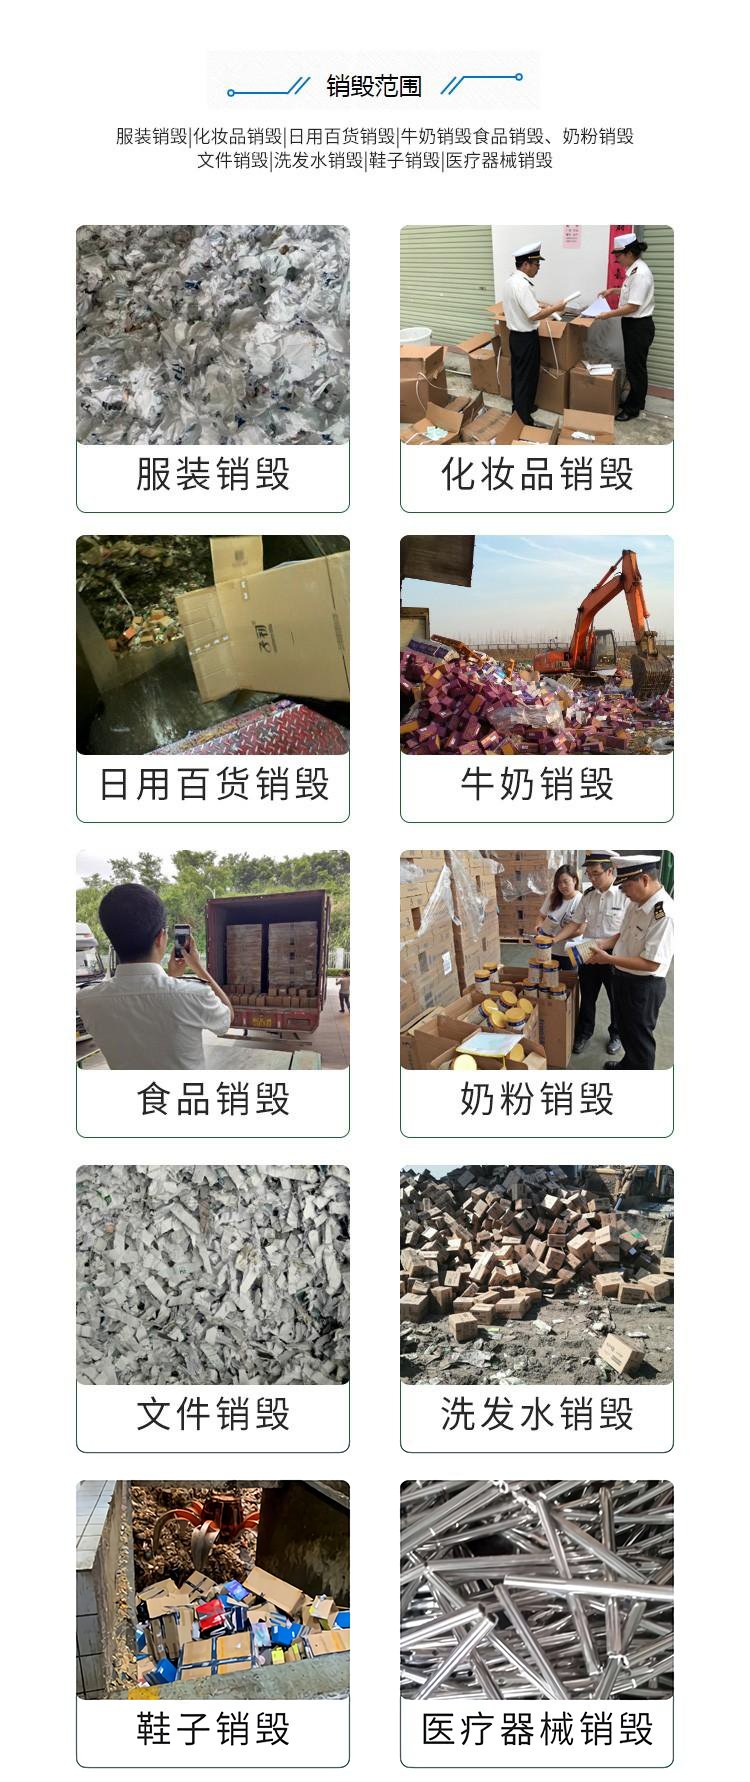 深圳龙华区保税区商品销毁厂家无害化处理公司